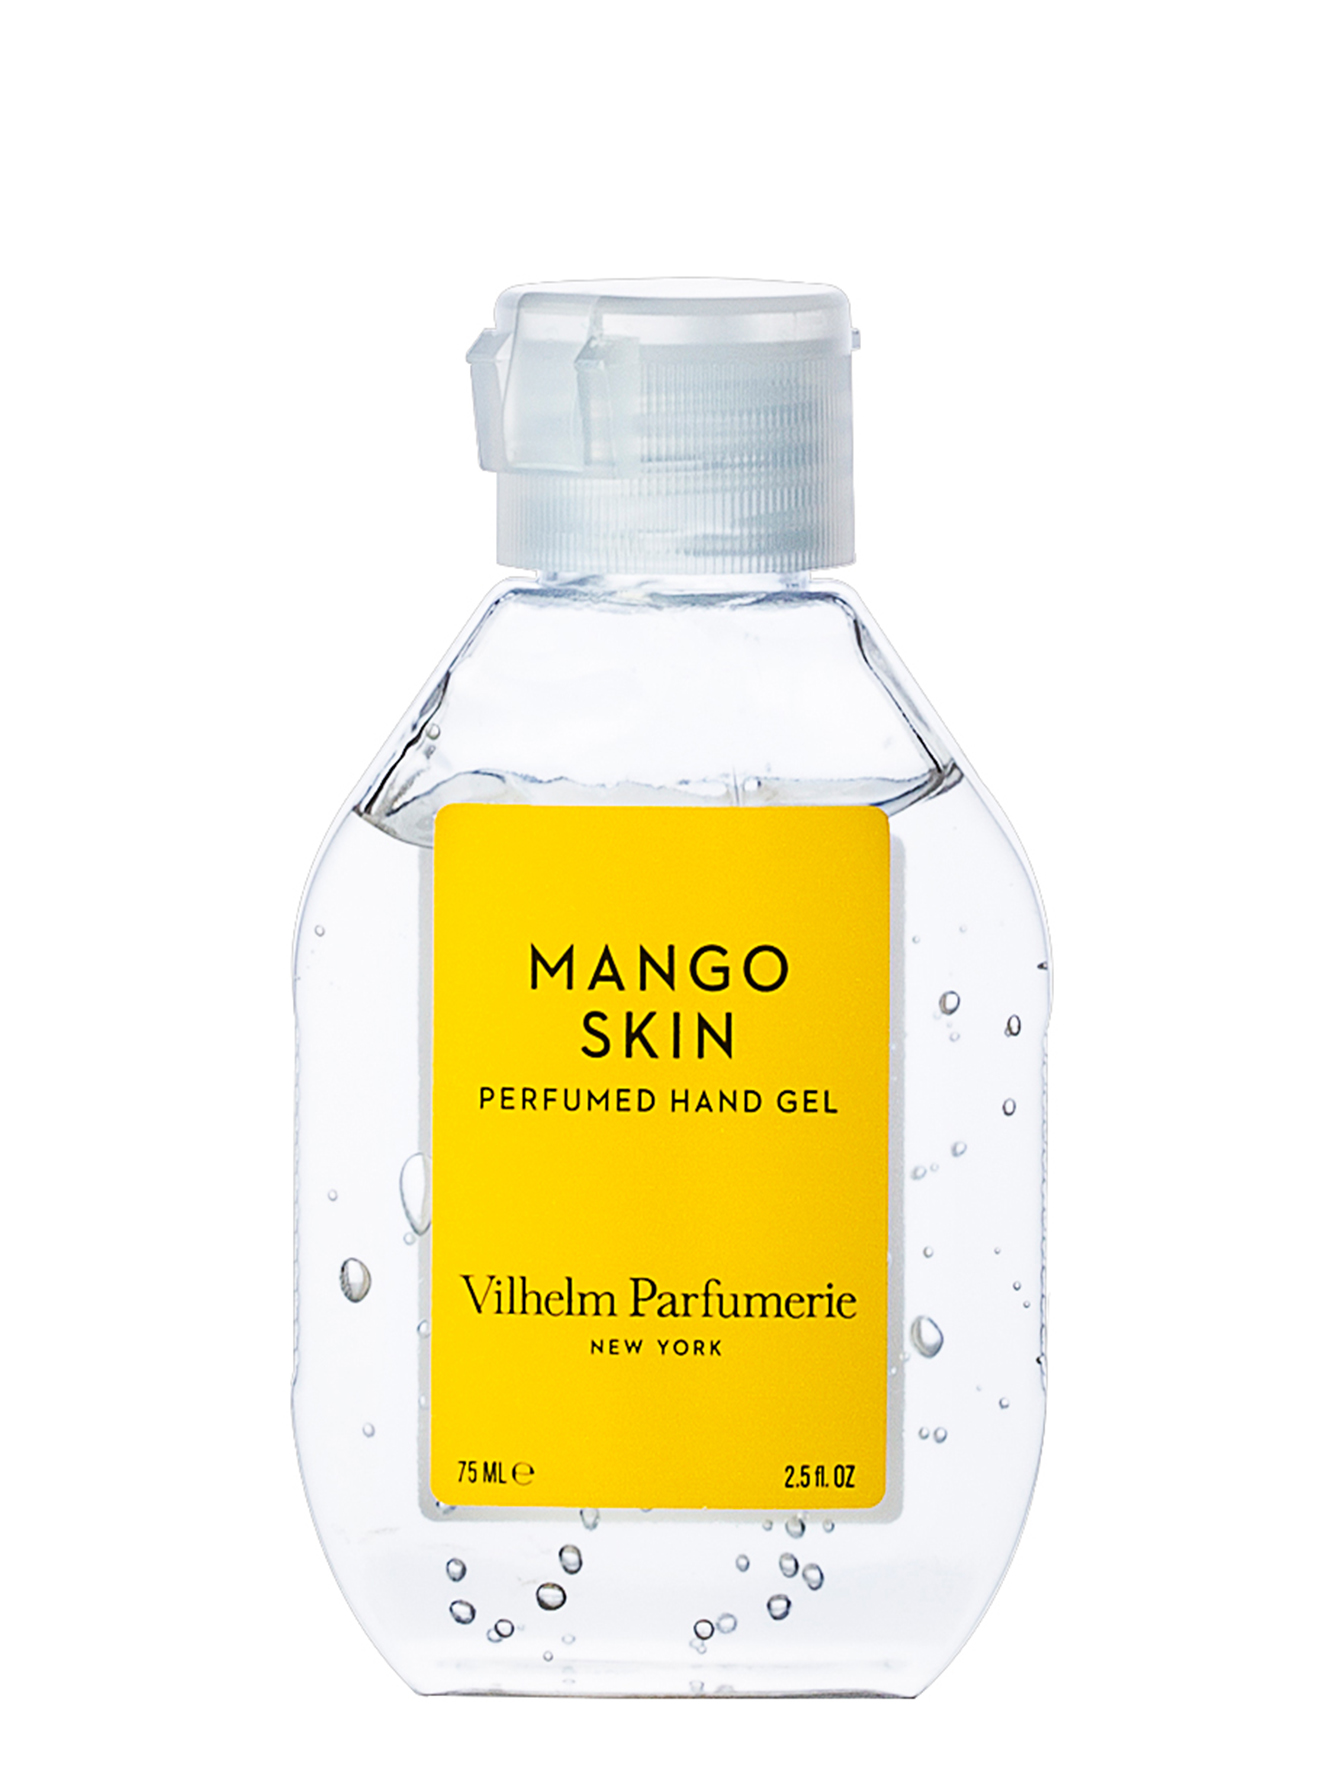 Санитайзер парфюмированный гель для рук Mango Skin, 75 мл - Общий вид